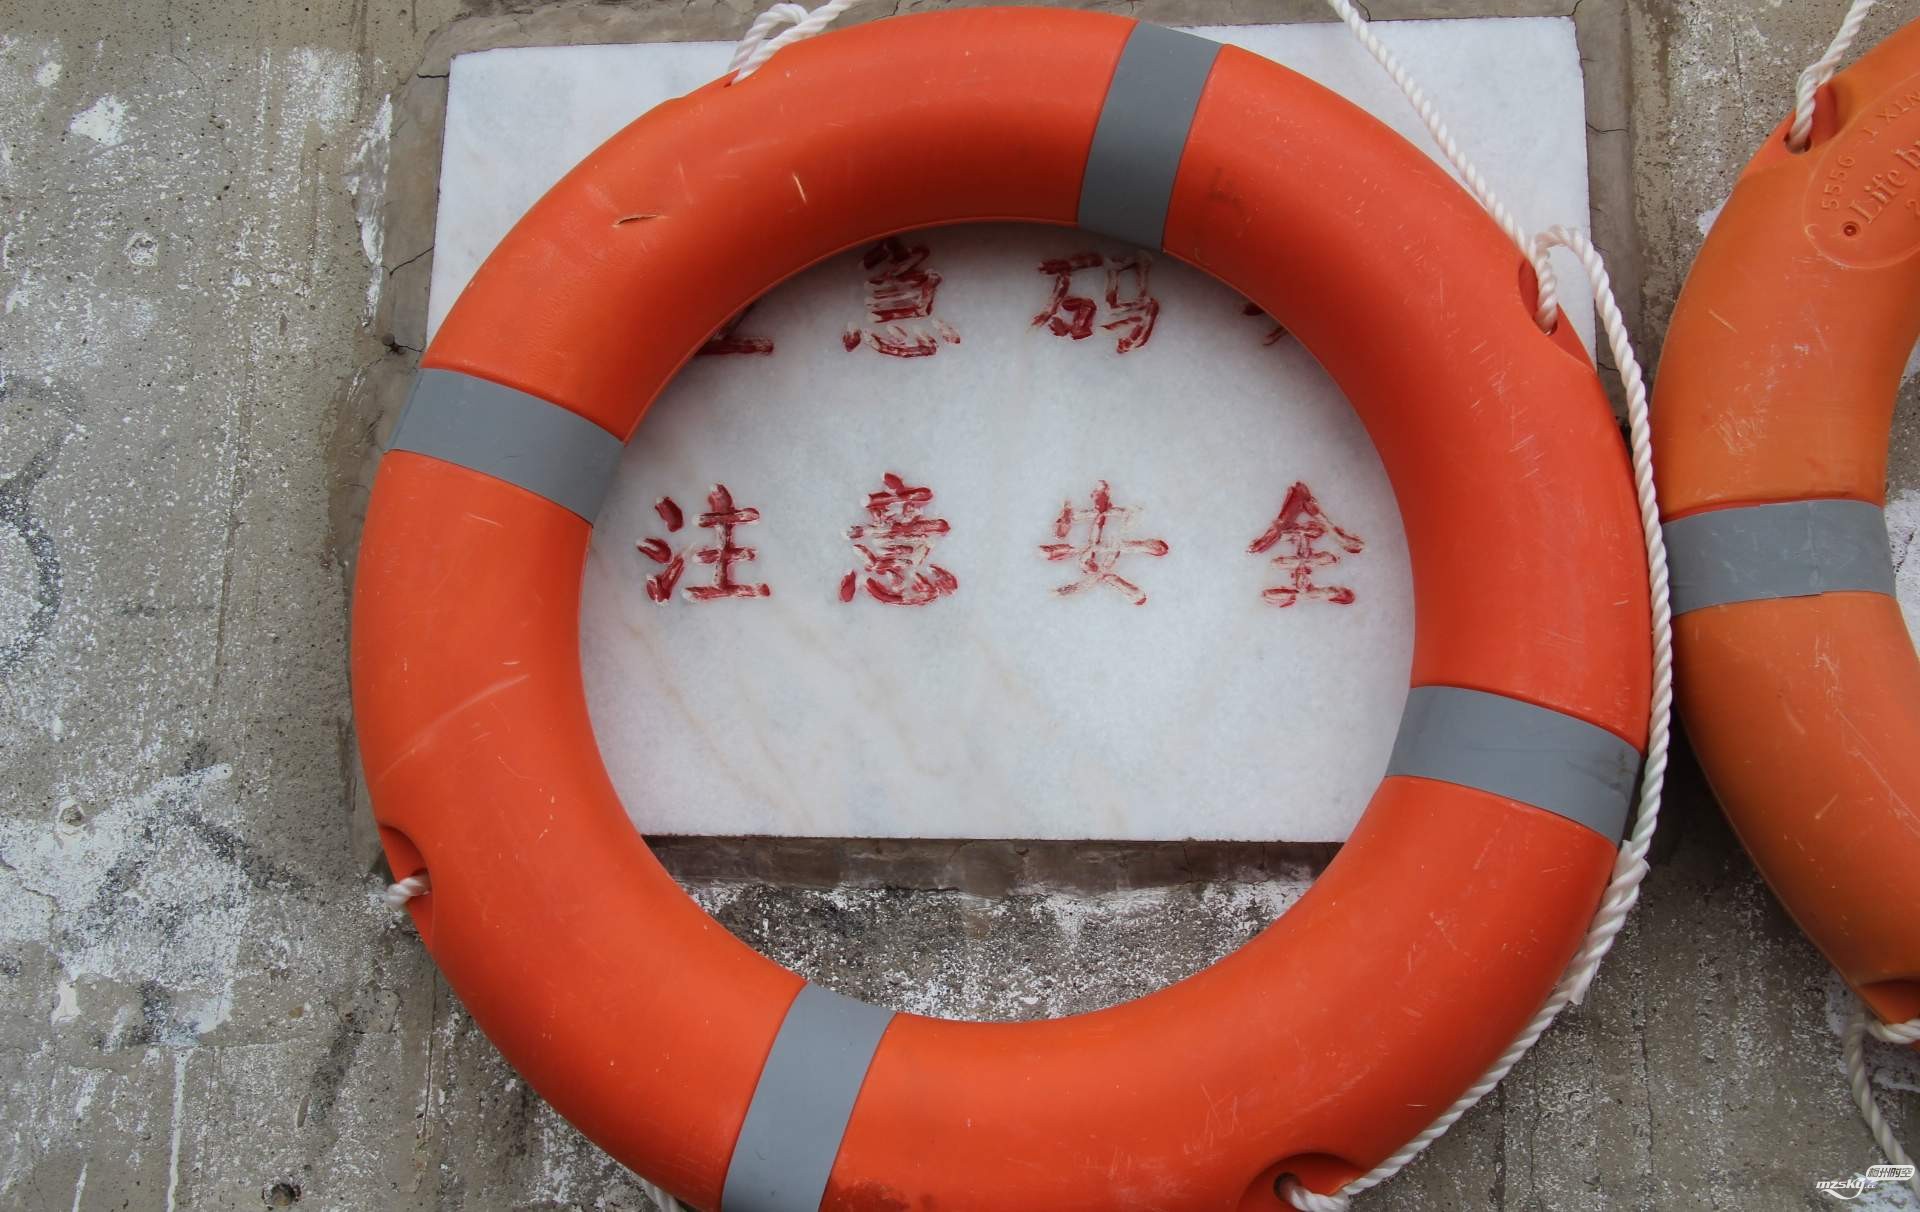   看到梅城梅江沿岸增设救生圈